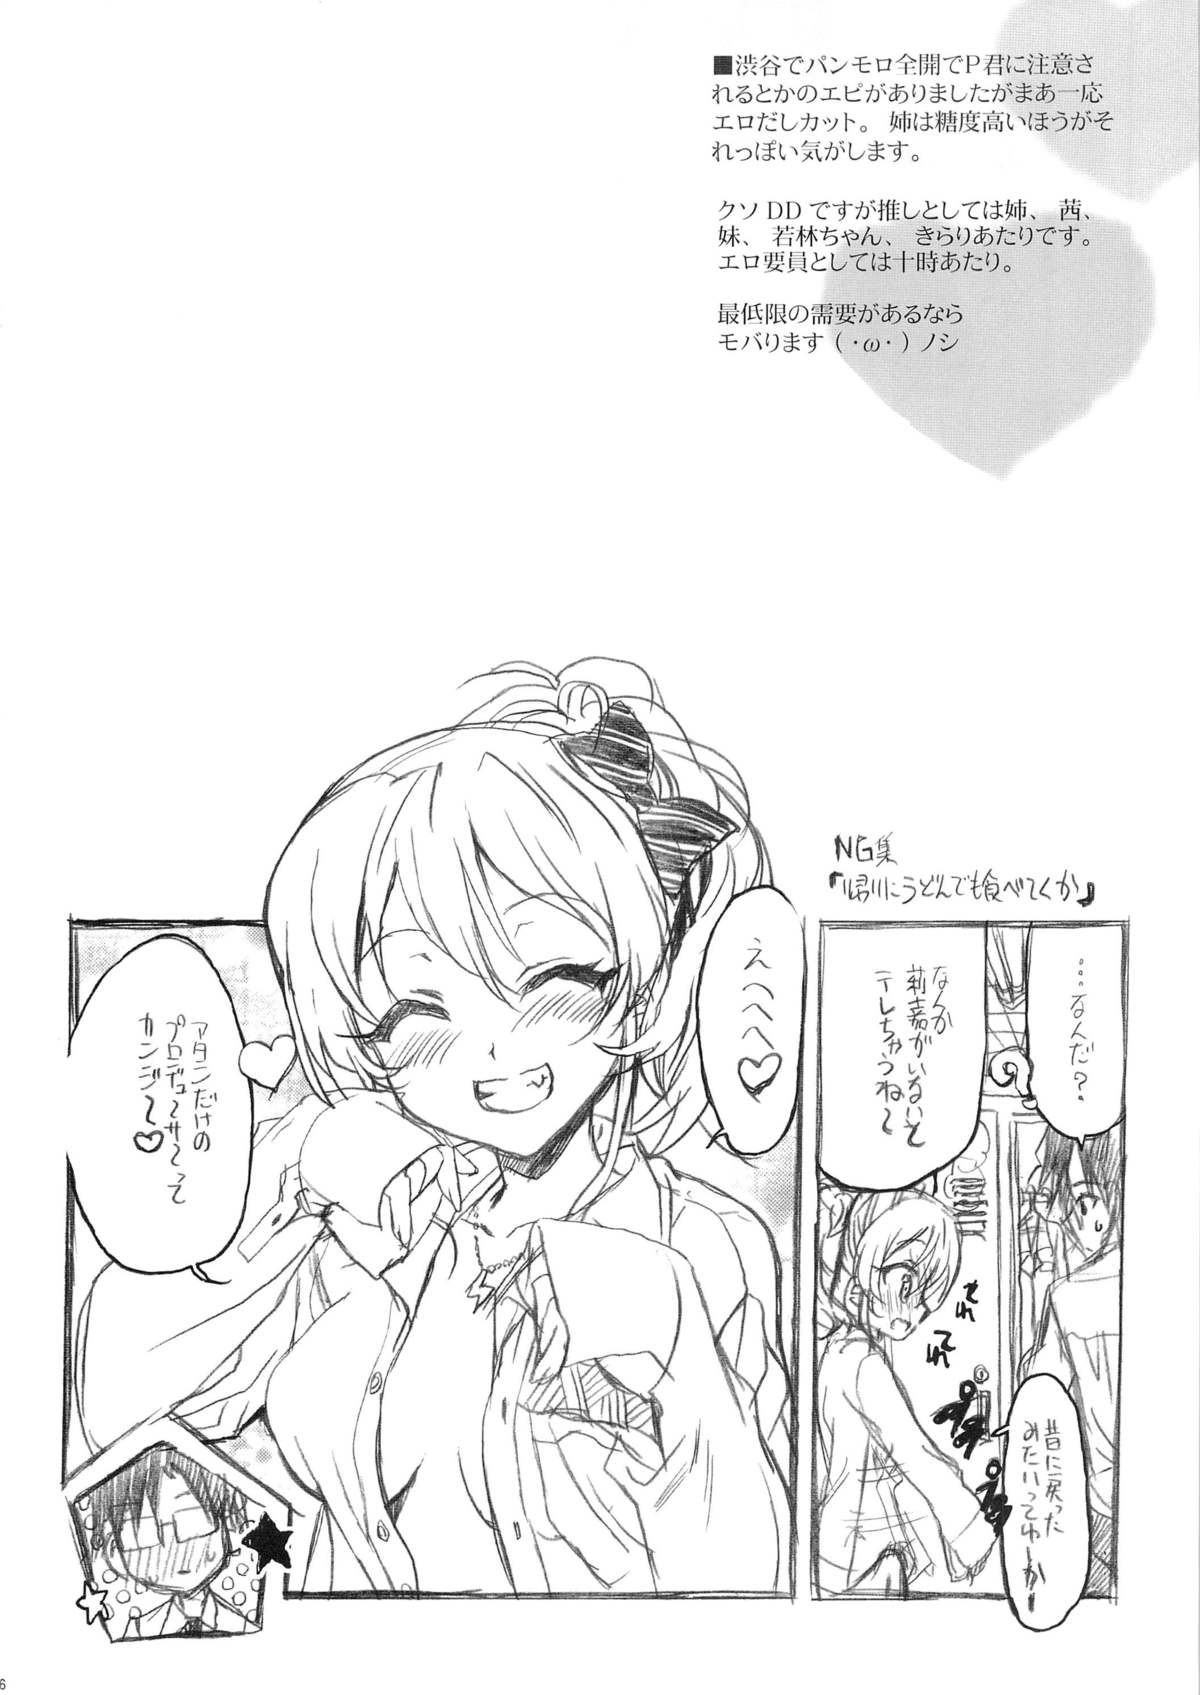 (COMIC1☆7) [ねこバス停(しゃあ)] PASSION FRUITS GIRLS #2 「城ケ崎美嘉」 (アイドルマスター シンデレラガールズ)